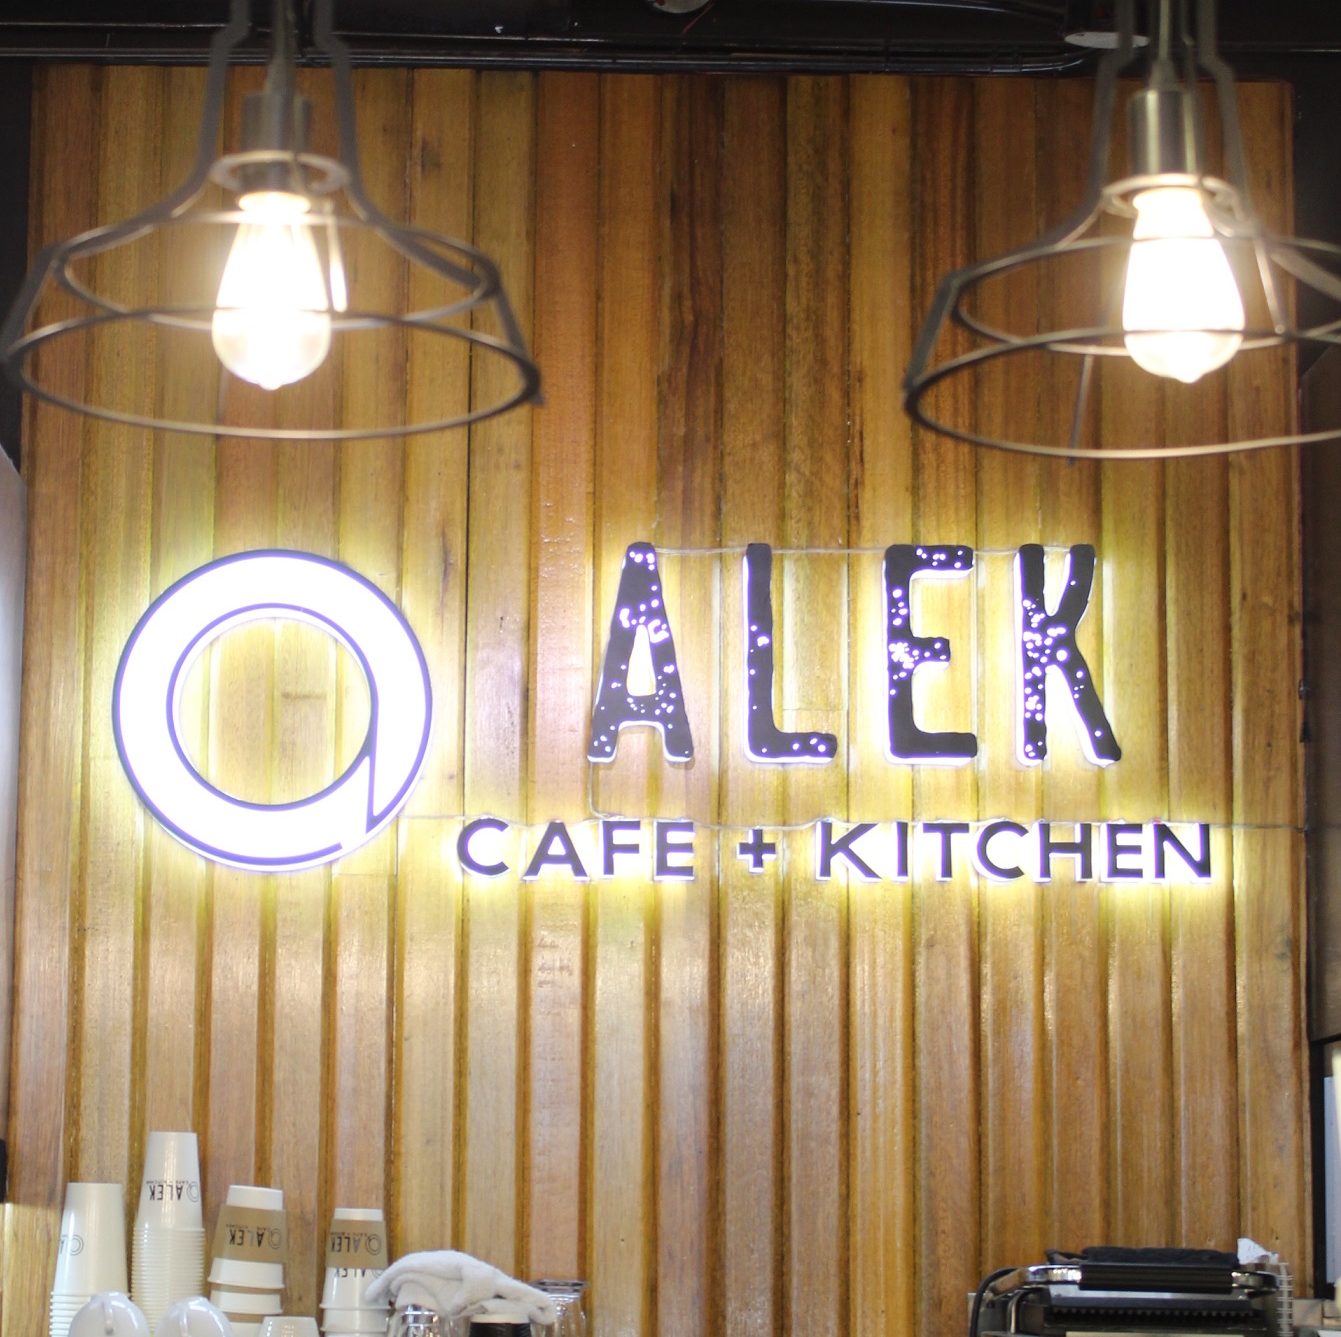 Alek Cafe + Kitchen